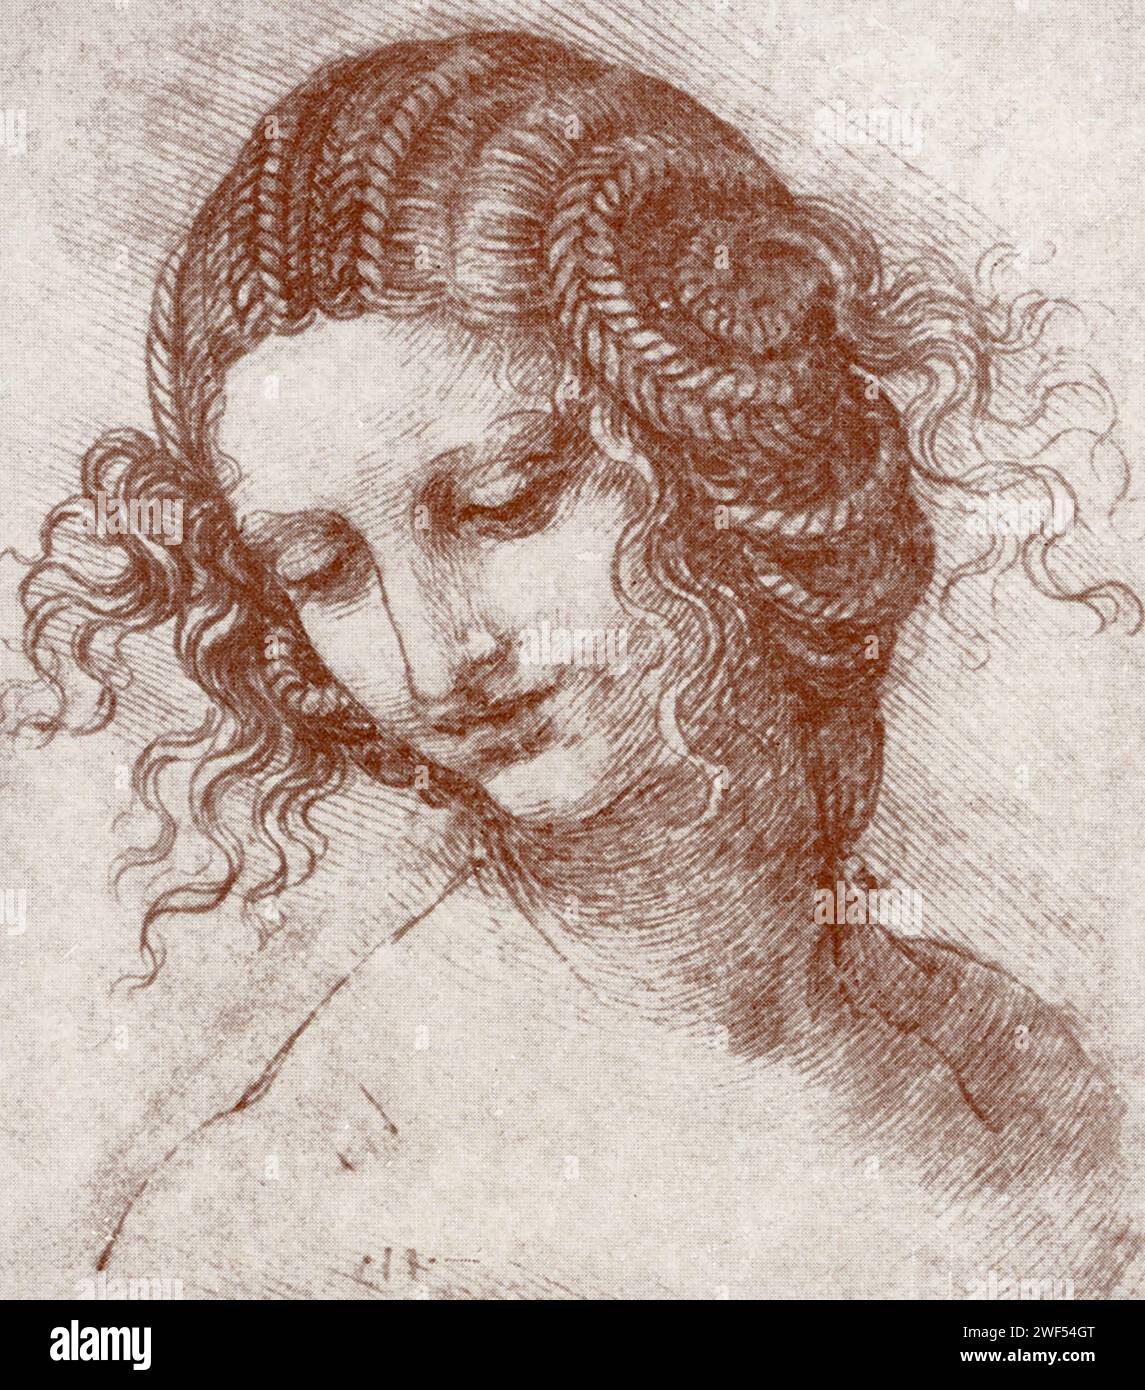 Questo disegno di Leonardo da Vinci mostra lo stile di Leonardo - disegni a specchio. Qui viene mostrata una giovane donna. Leonardo di ser Piero da Vinci (1452-1519) è stato un polimero italiano dell'alto Rinascimento attivo come pittore, disegnatore, ingegnere, scienziato, teorico, scultore e architetto. Foto Stock